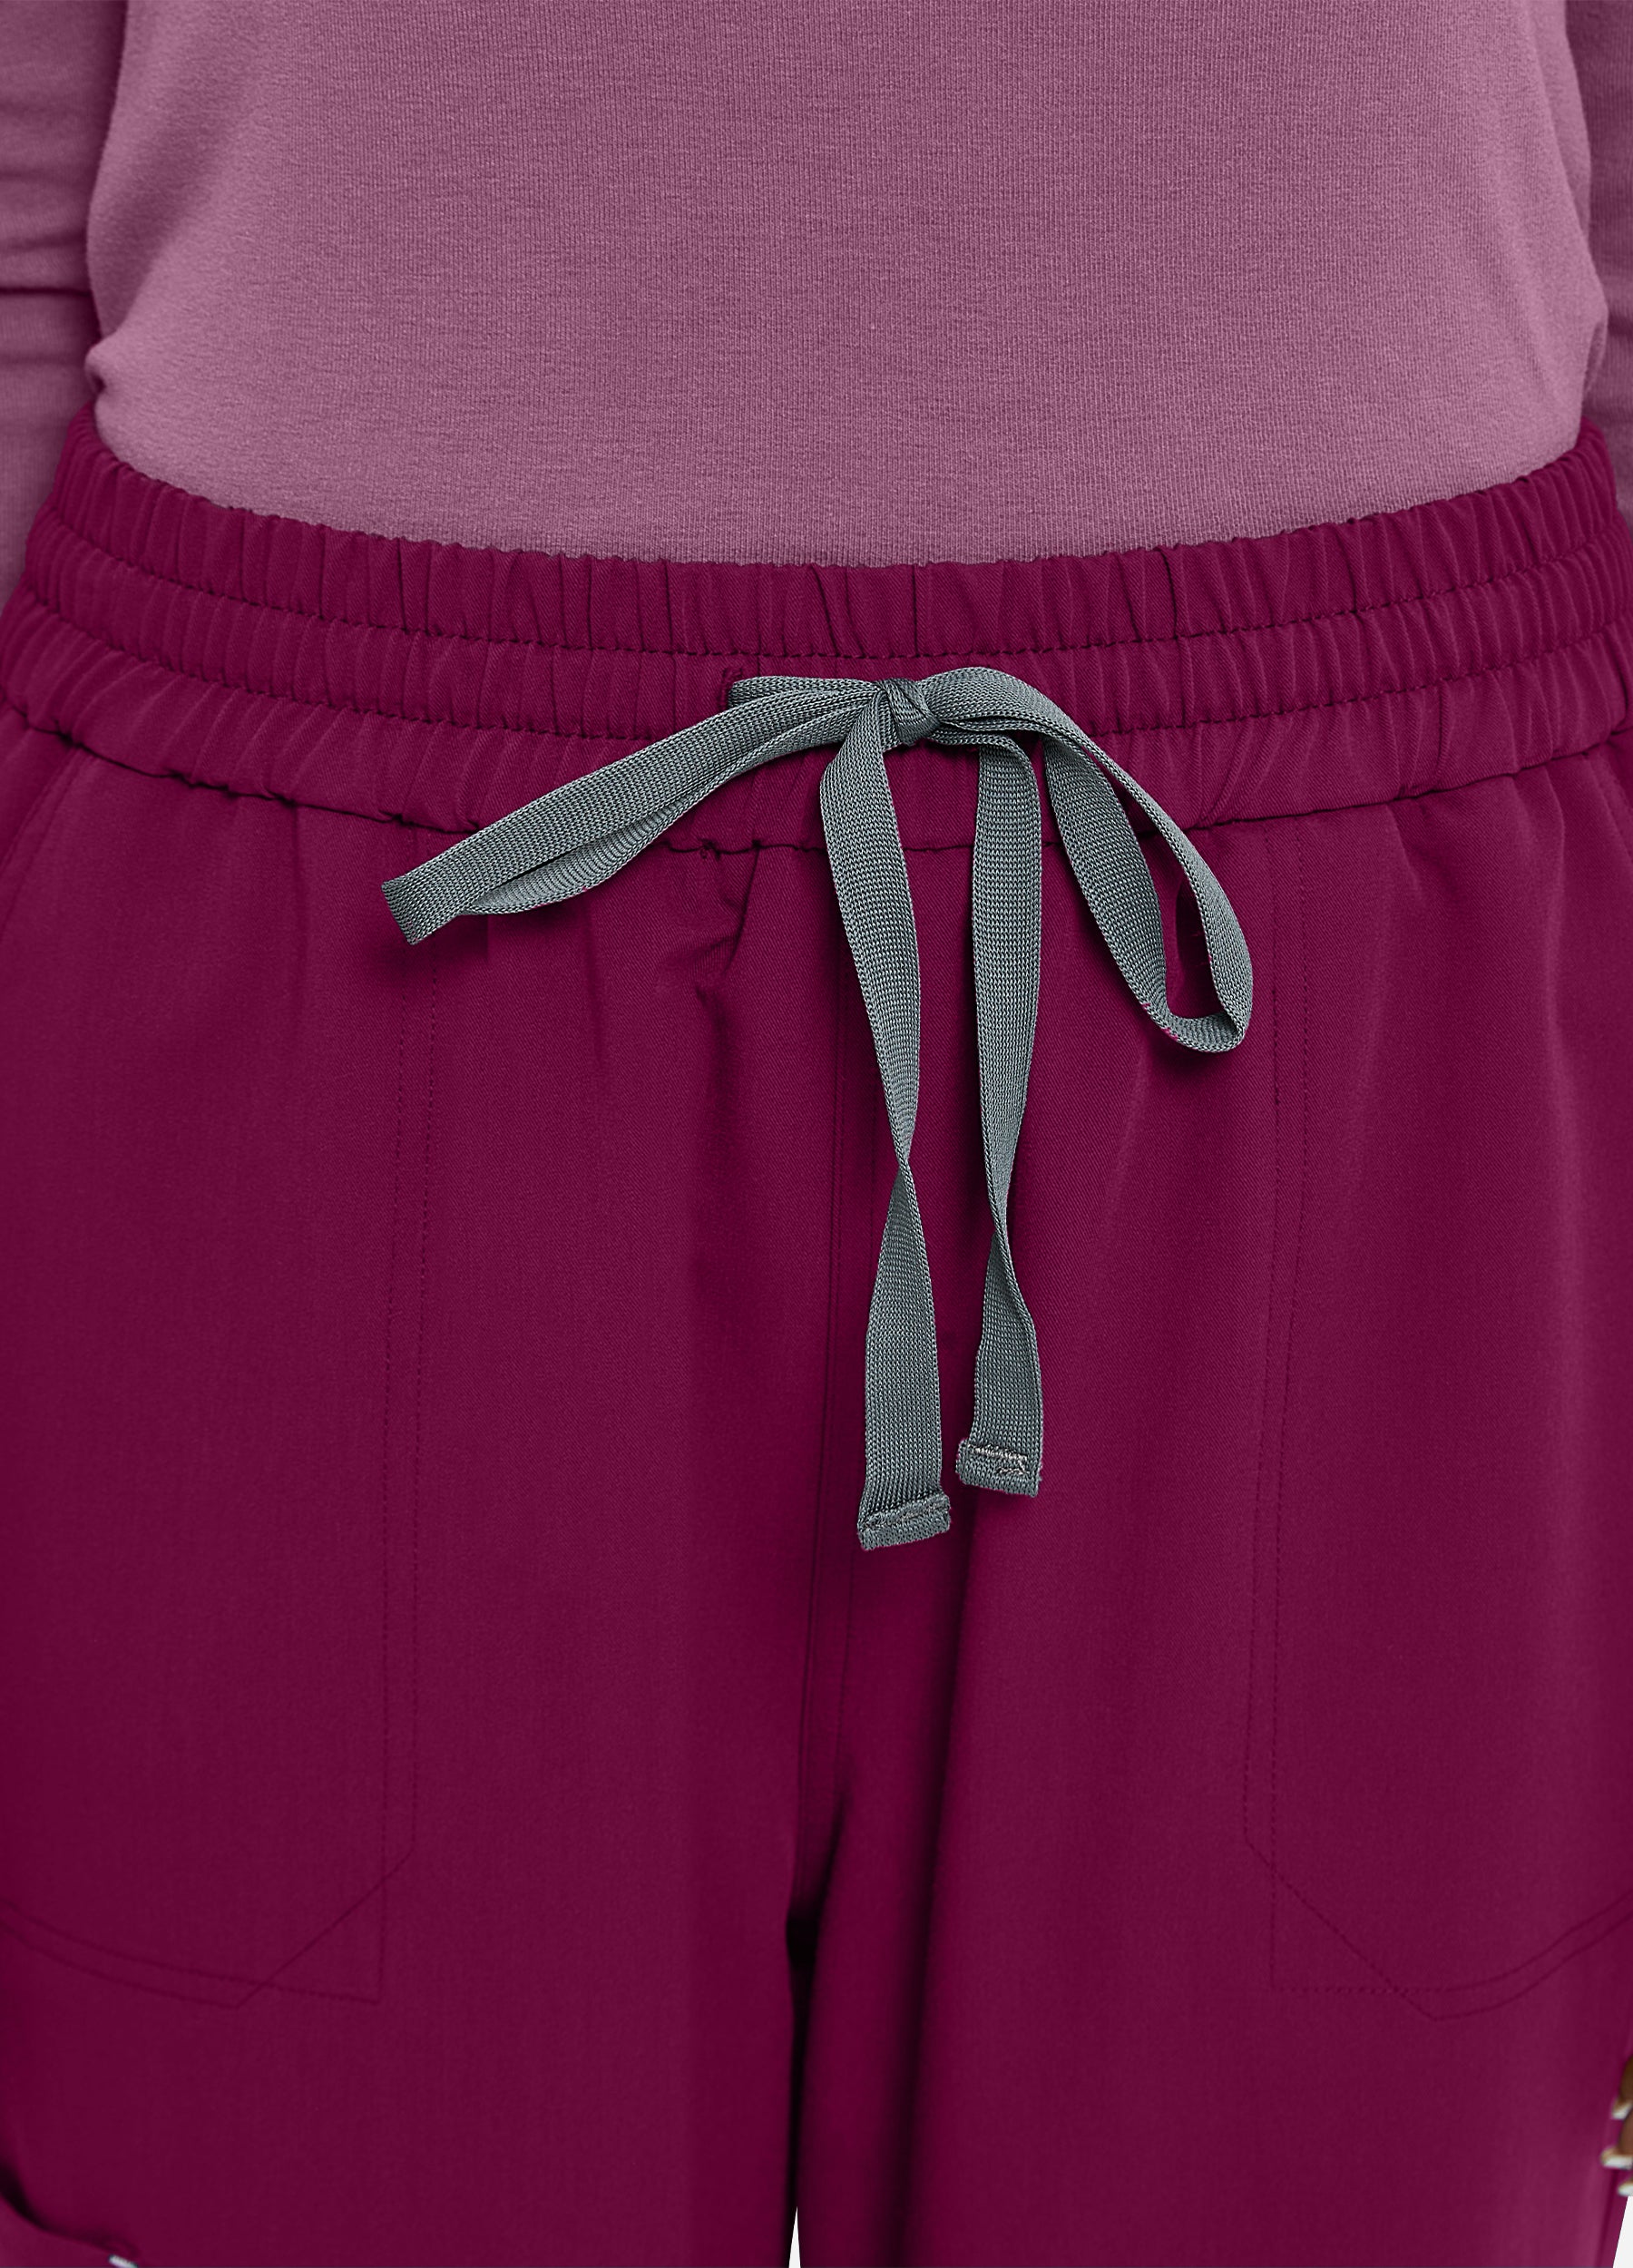 Pantalon cargo à 6 poches pour femmes